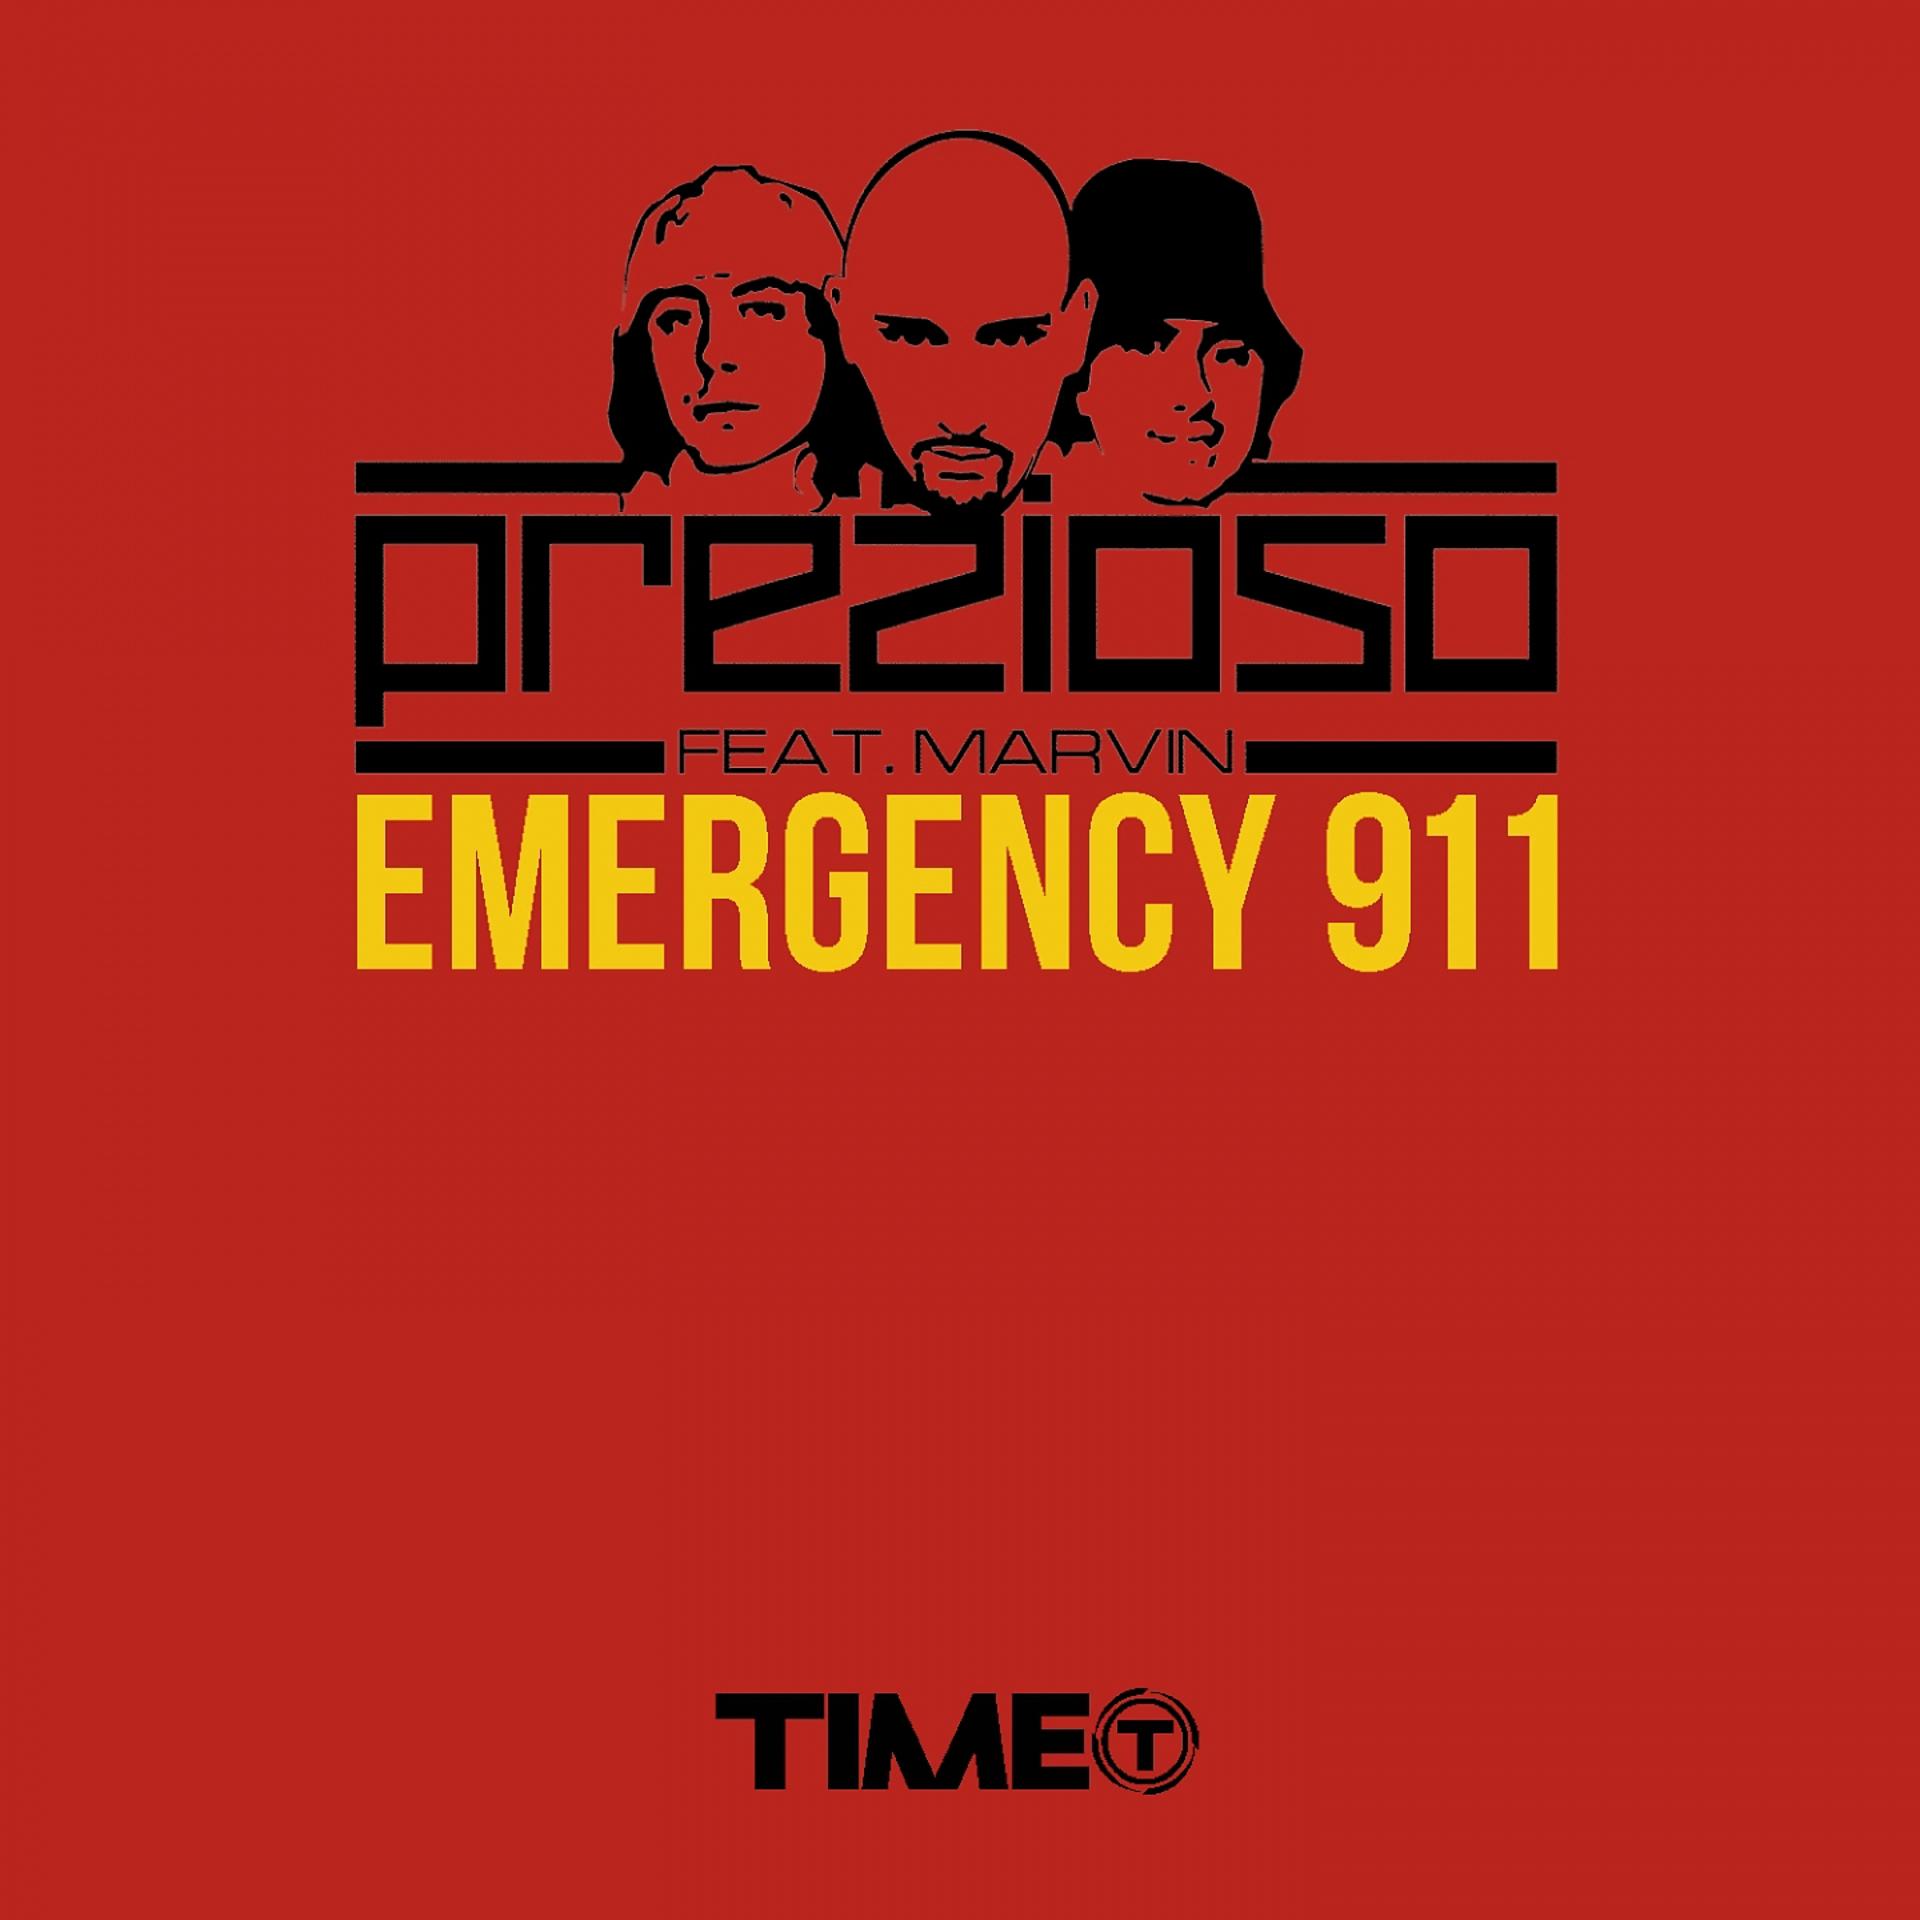 Постер к треку Prezioso, Marvin, Andrea prezioso - Emergency 911